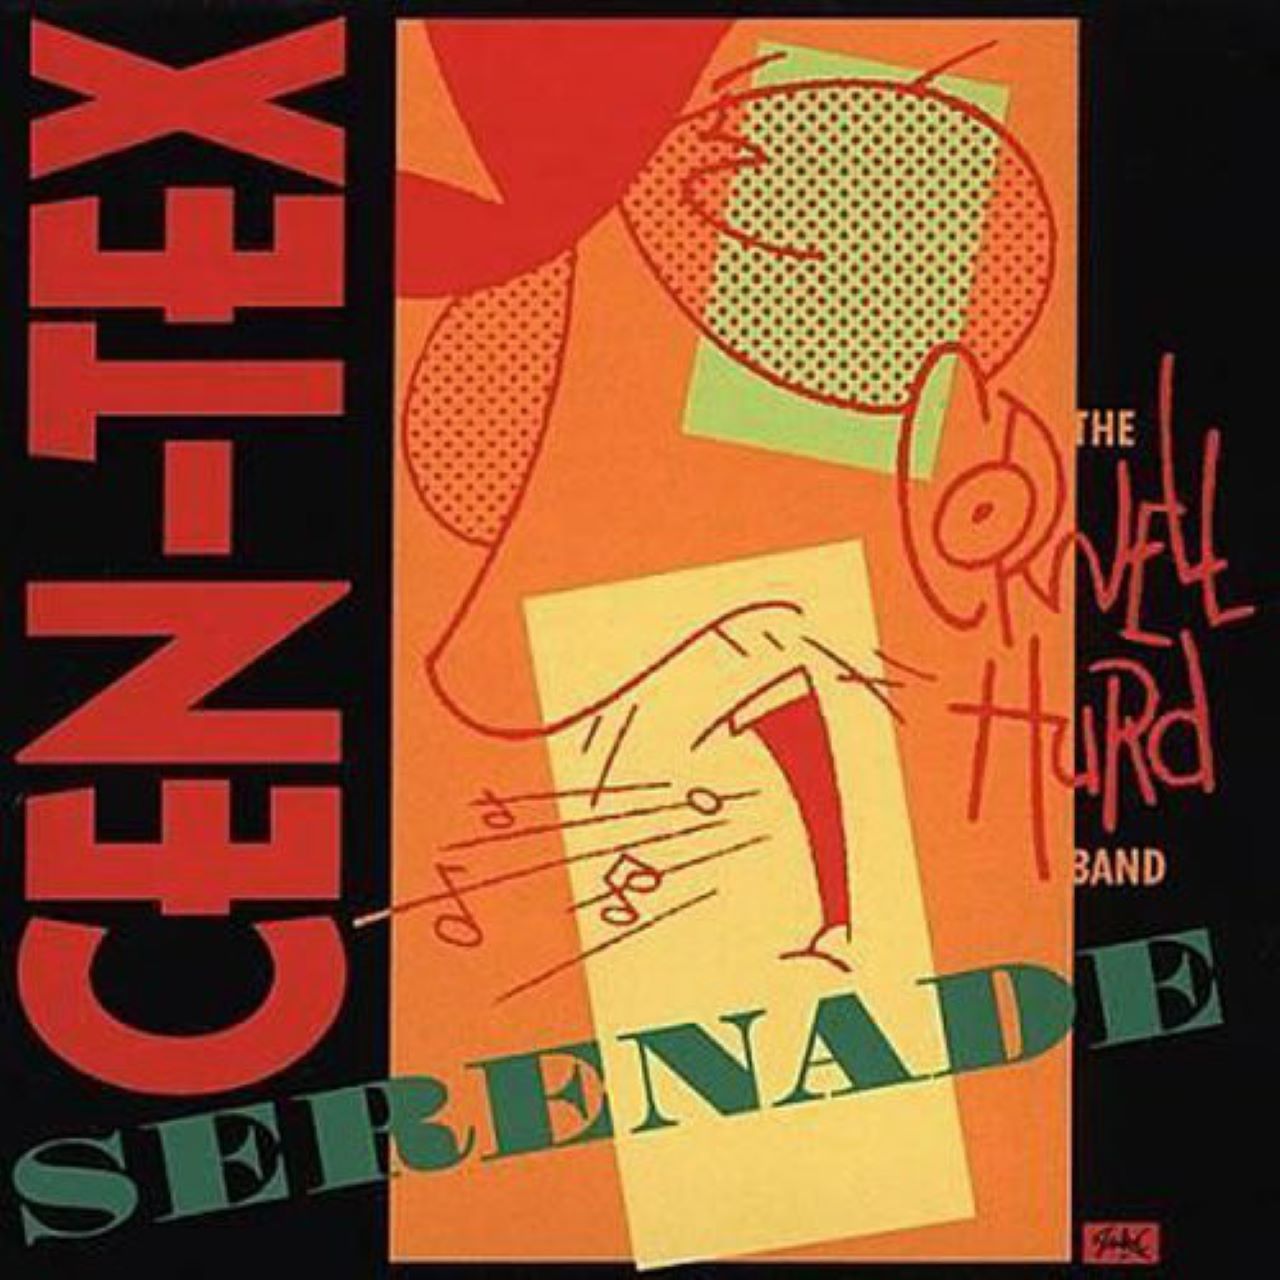 Cornell Hurd Band - Cen-Tex Serenade cover album